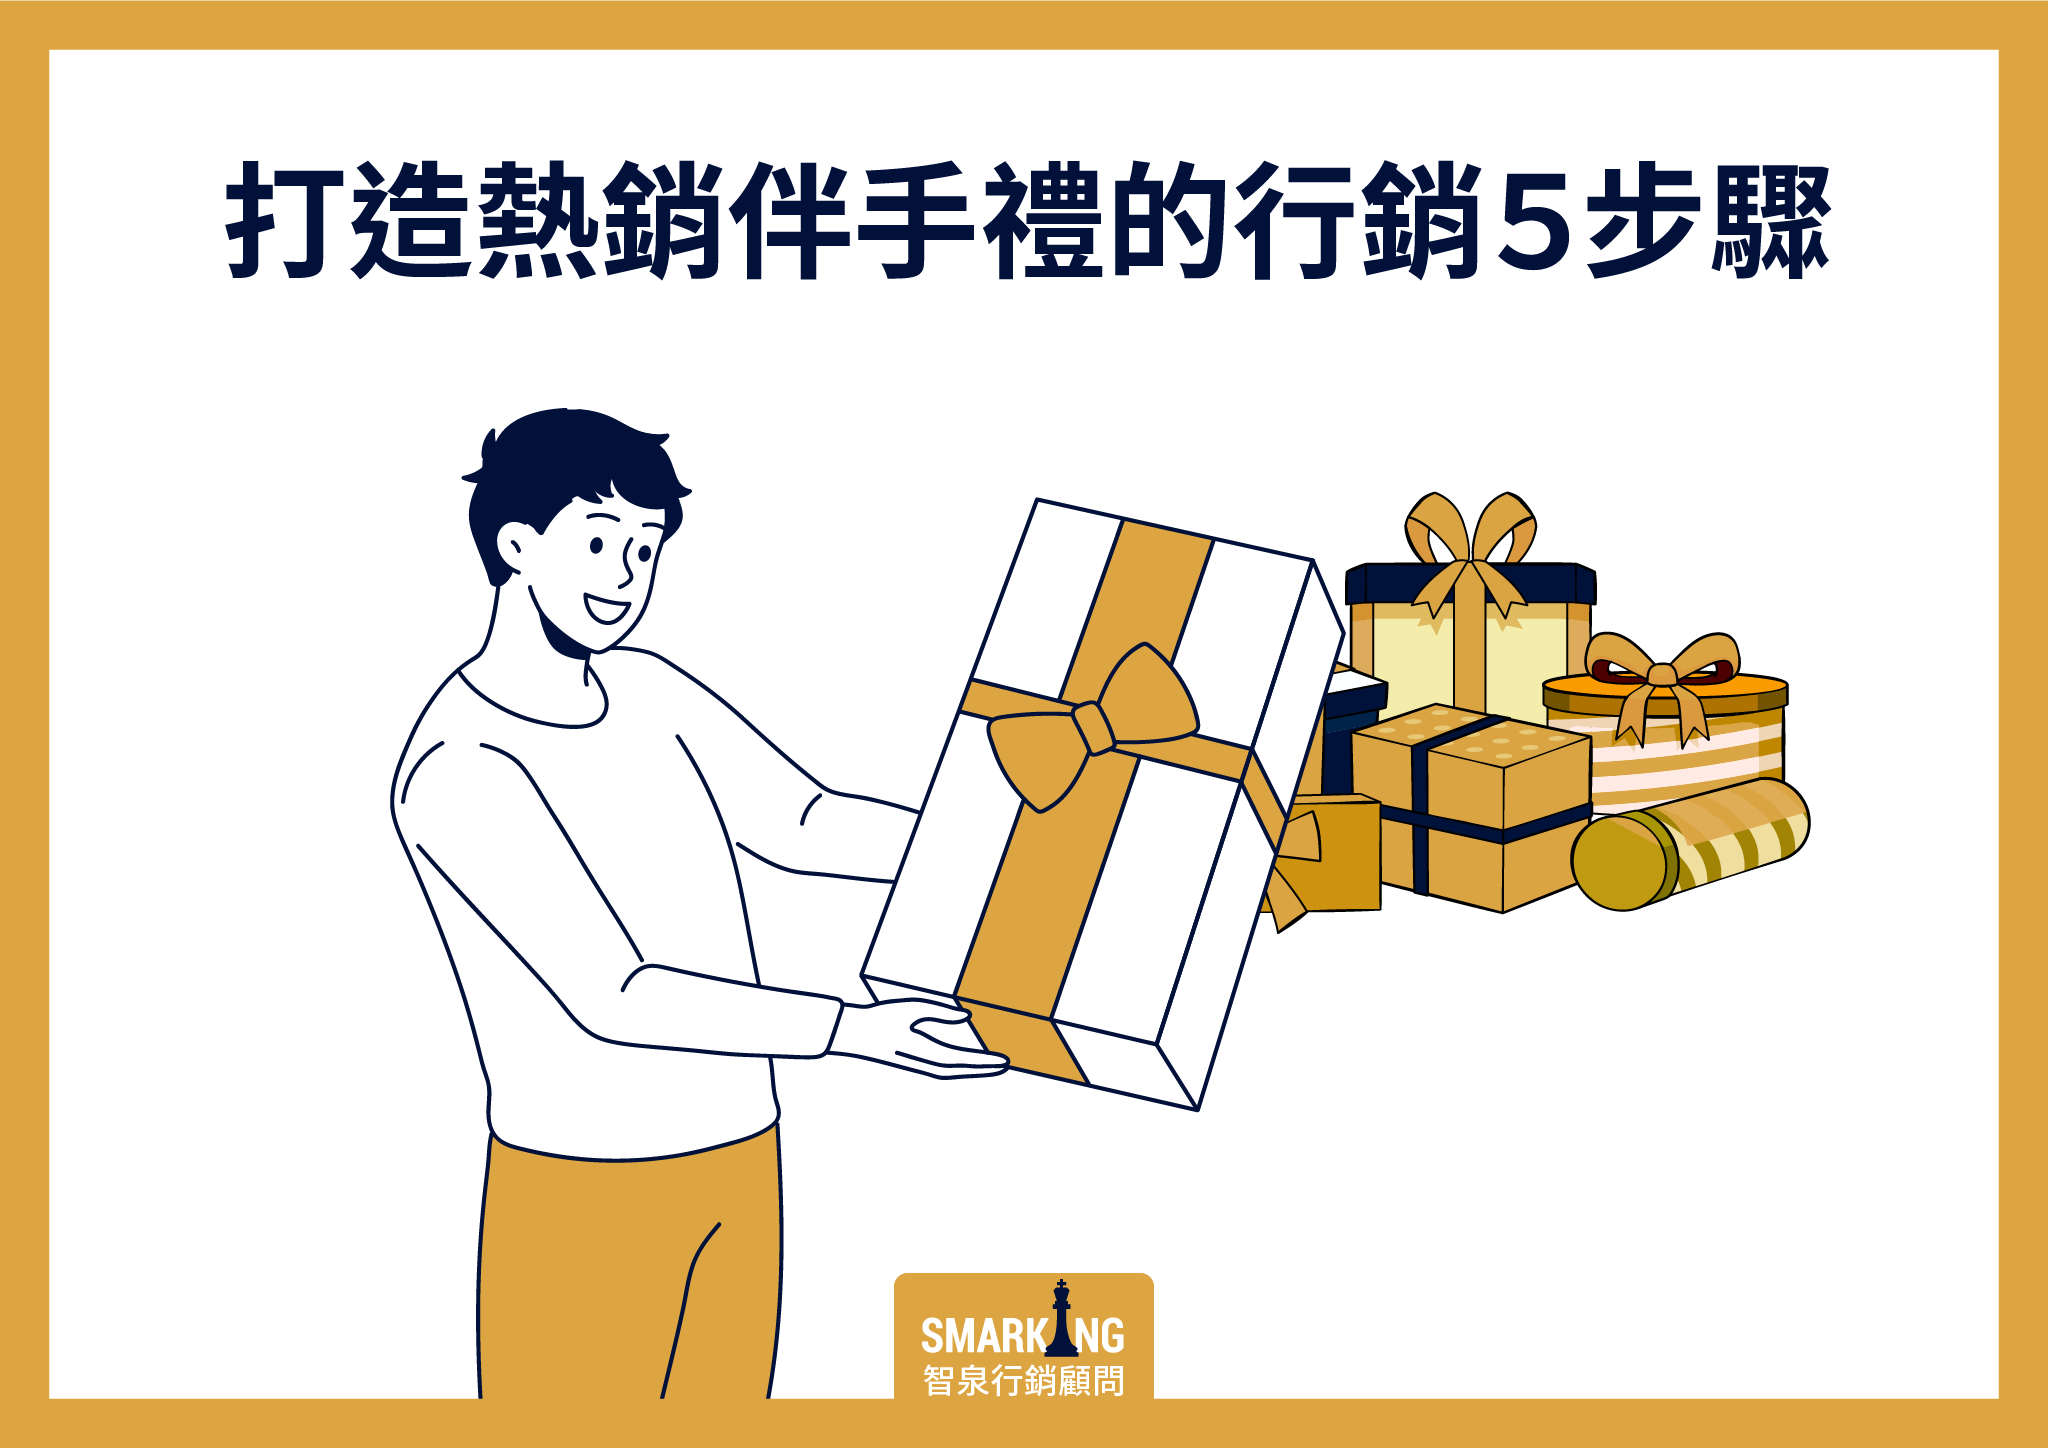 圖片中是一名男子拿著禮盒的插圖。